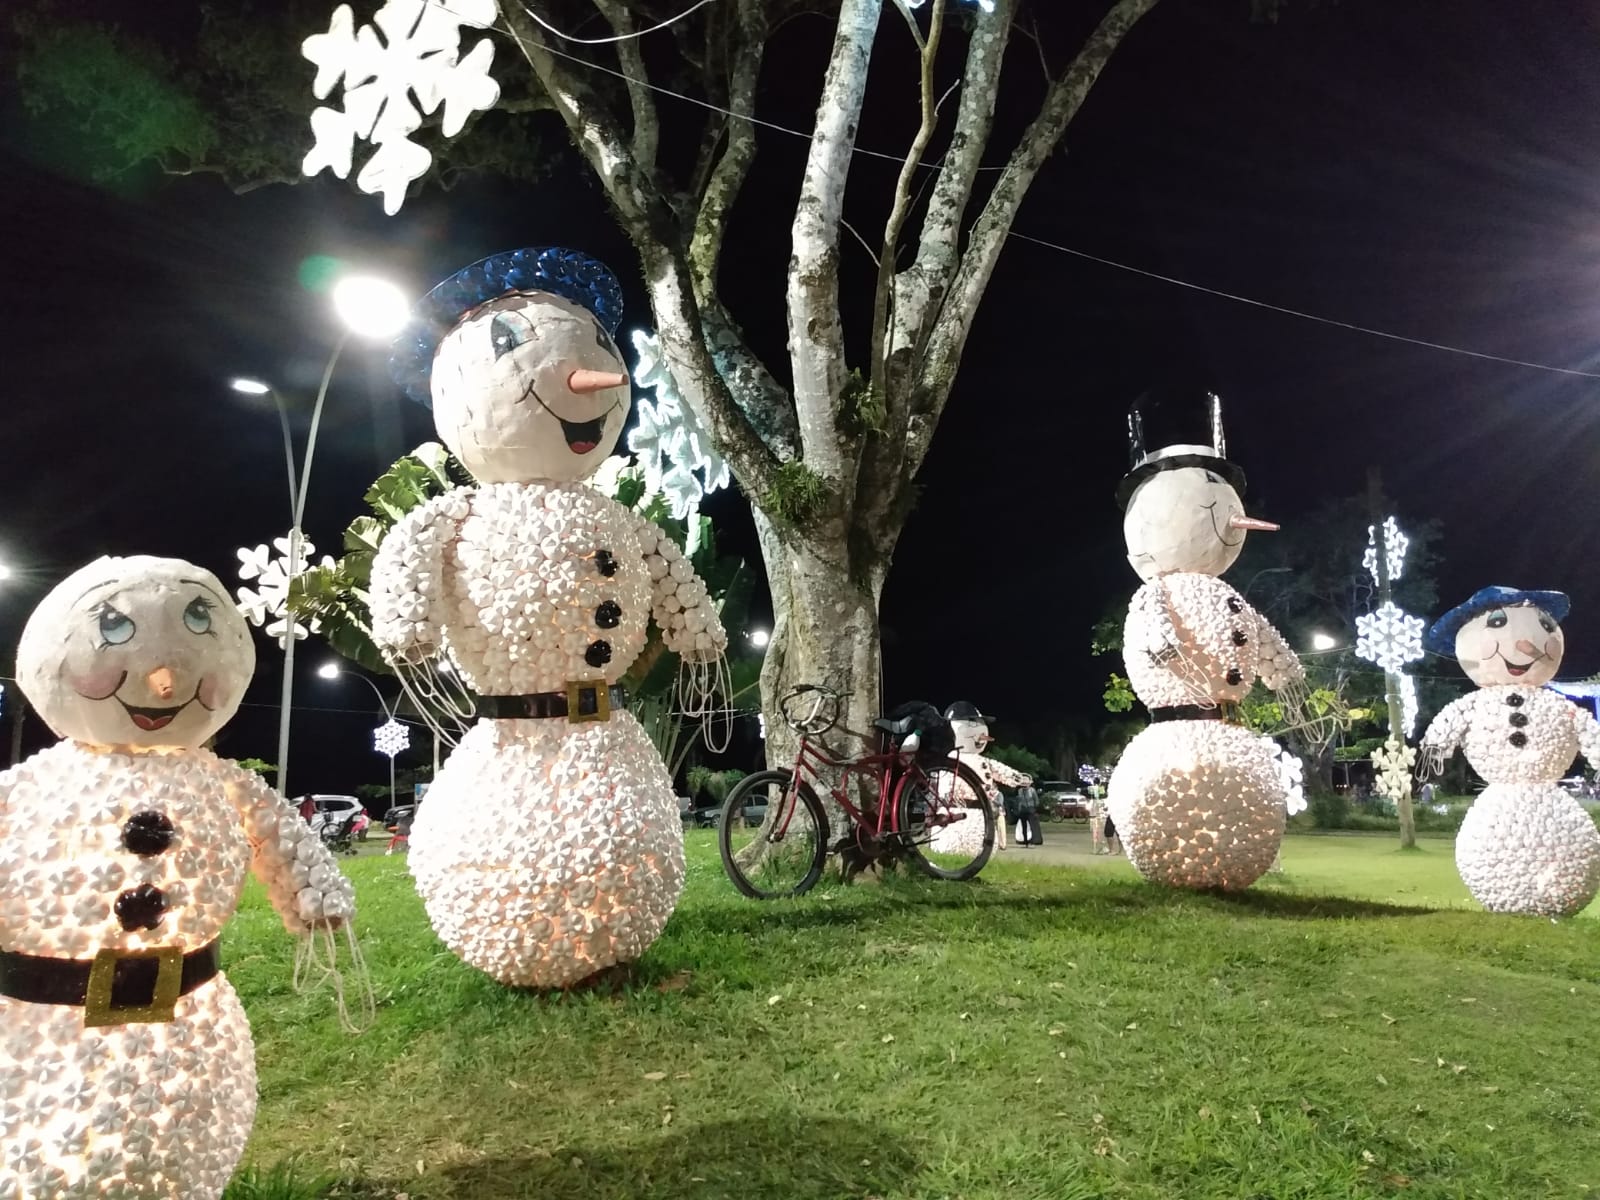 Gastos com decoração natalina em São Sebastião ultrapassaram 2,5 milhões de  reais - Tamoios News